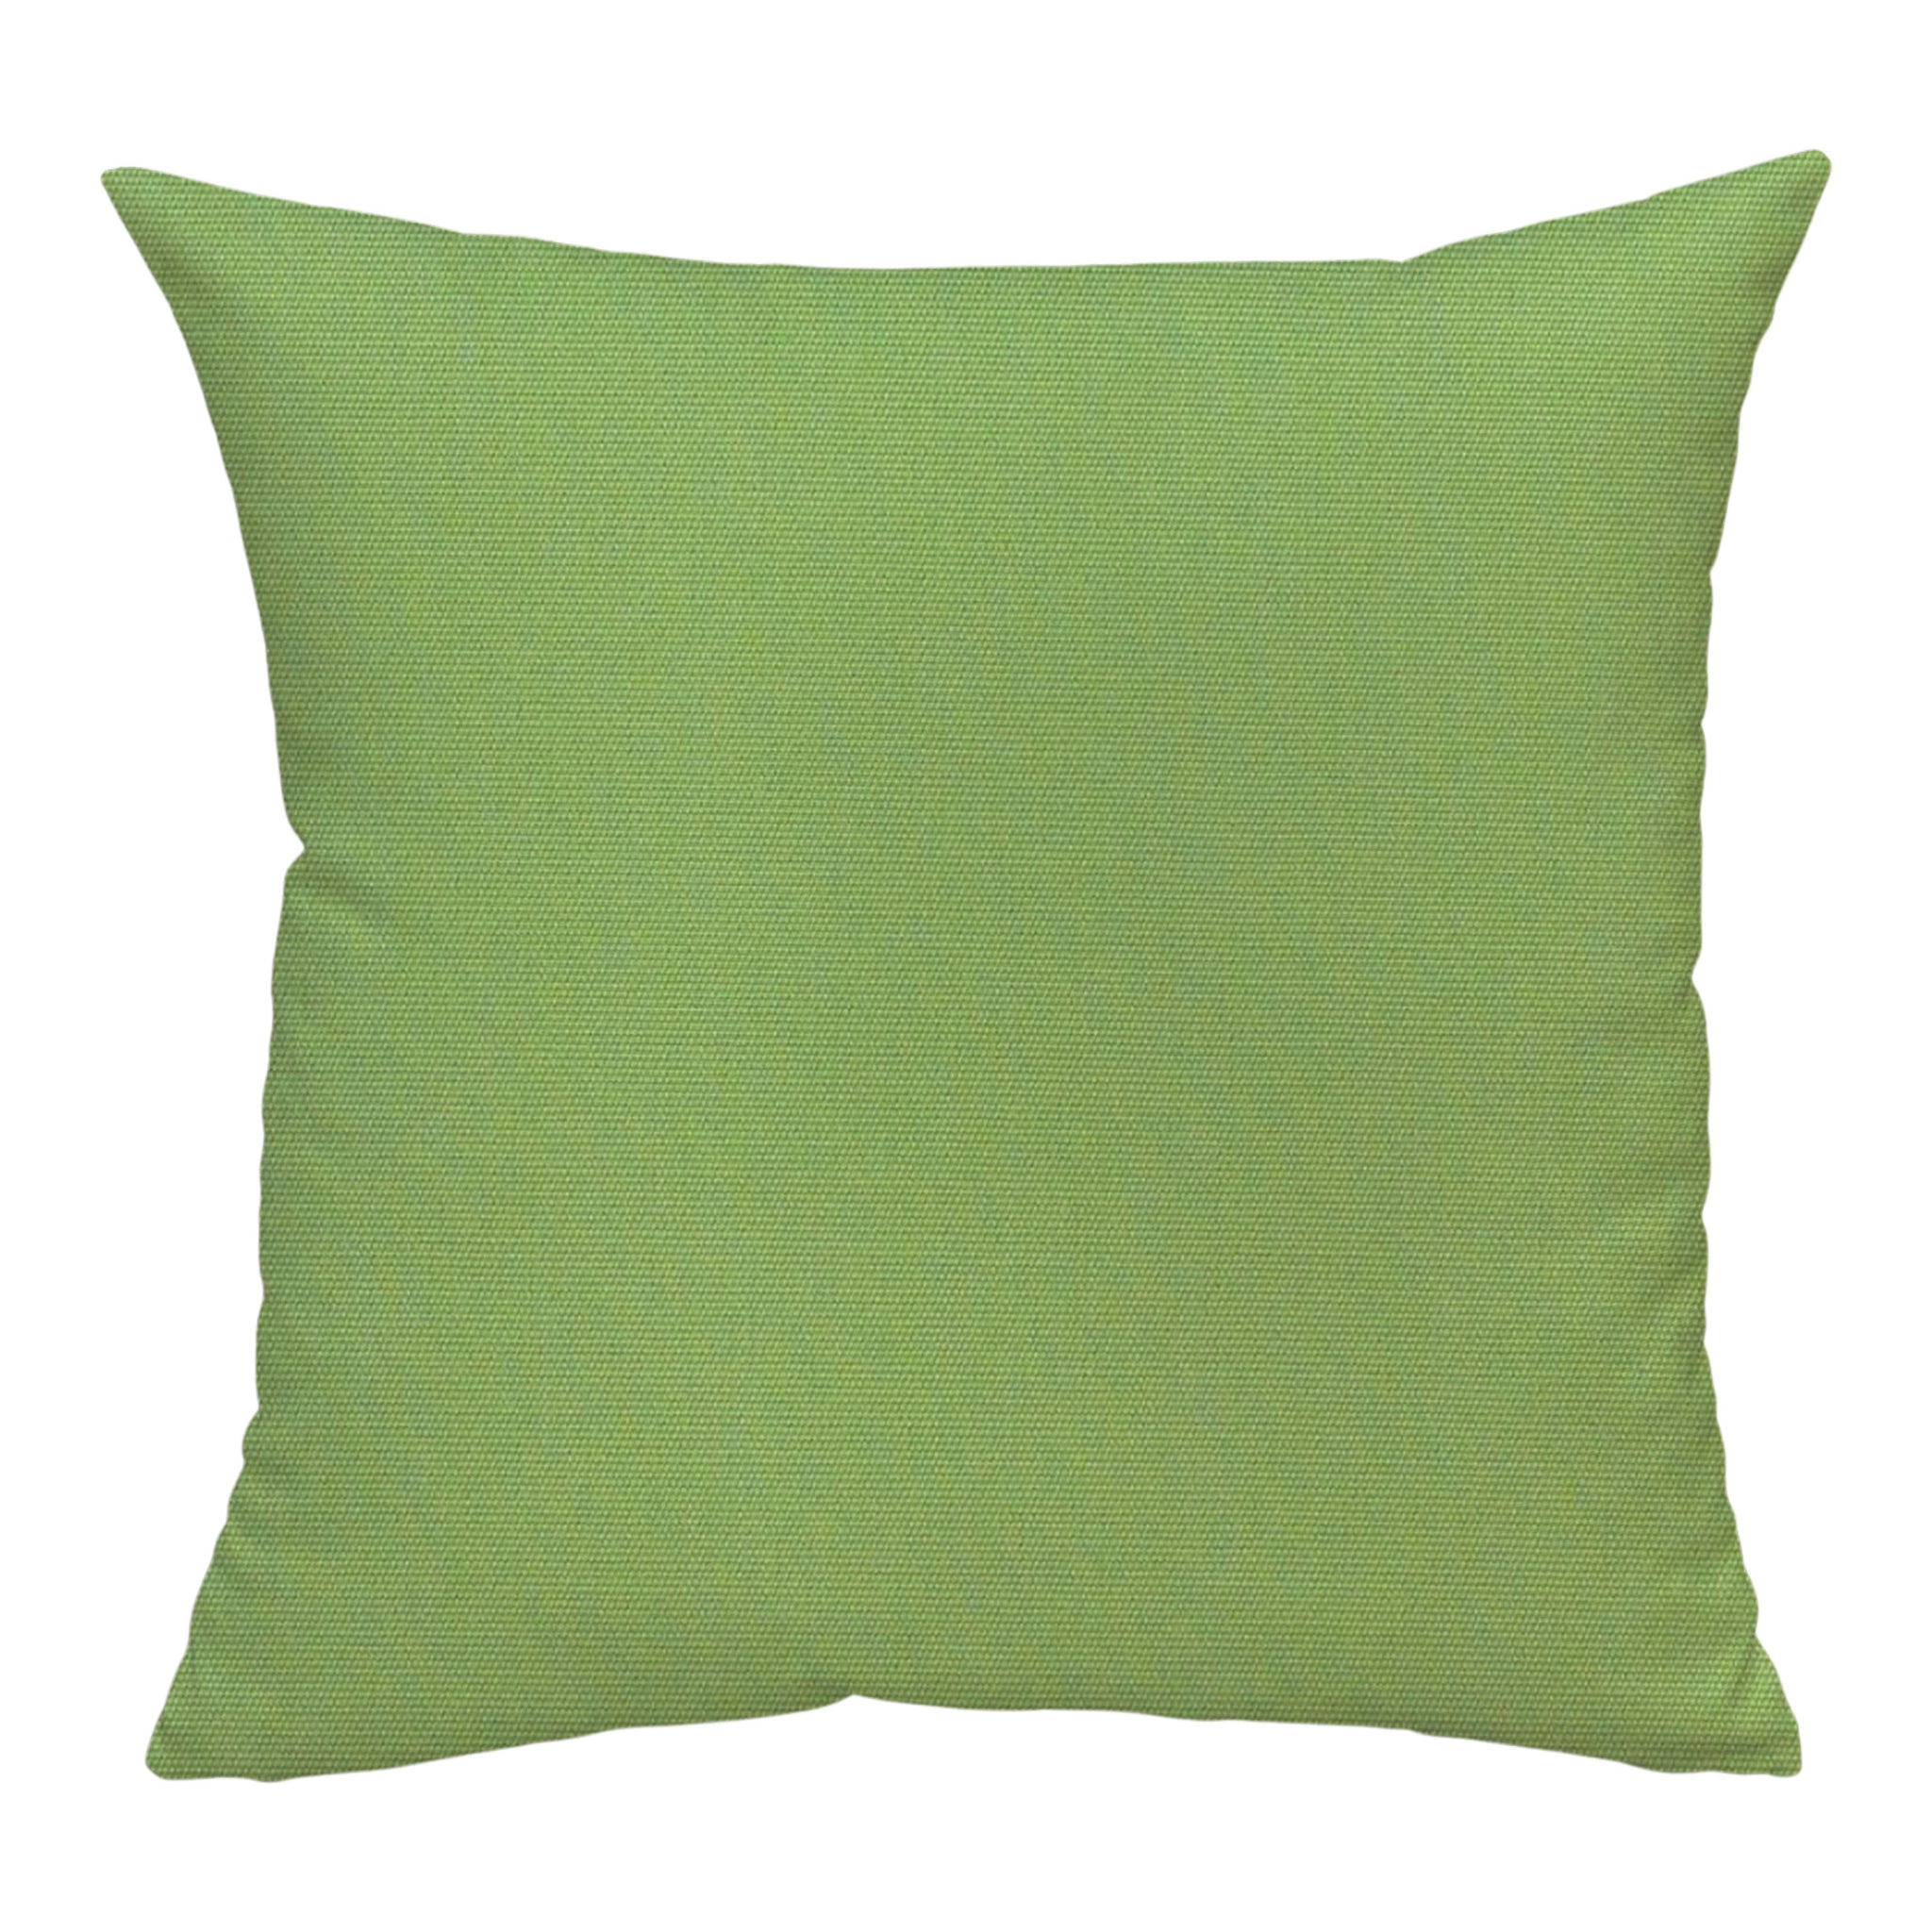 Sunbrella® Canvas Pillow Cover in Ginkgo